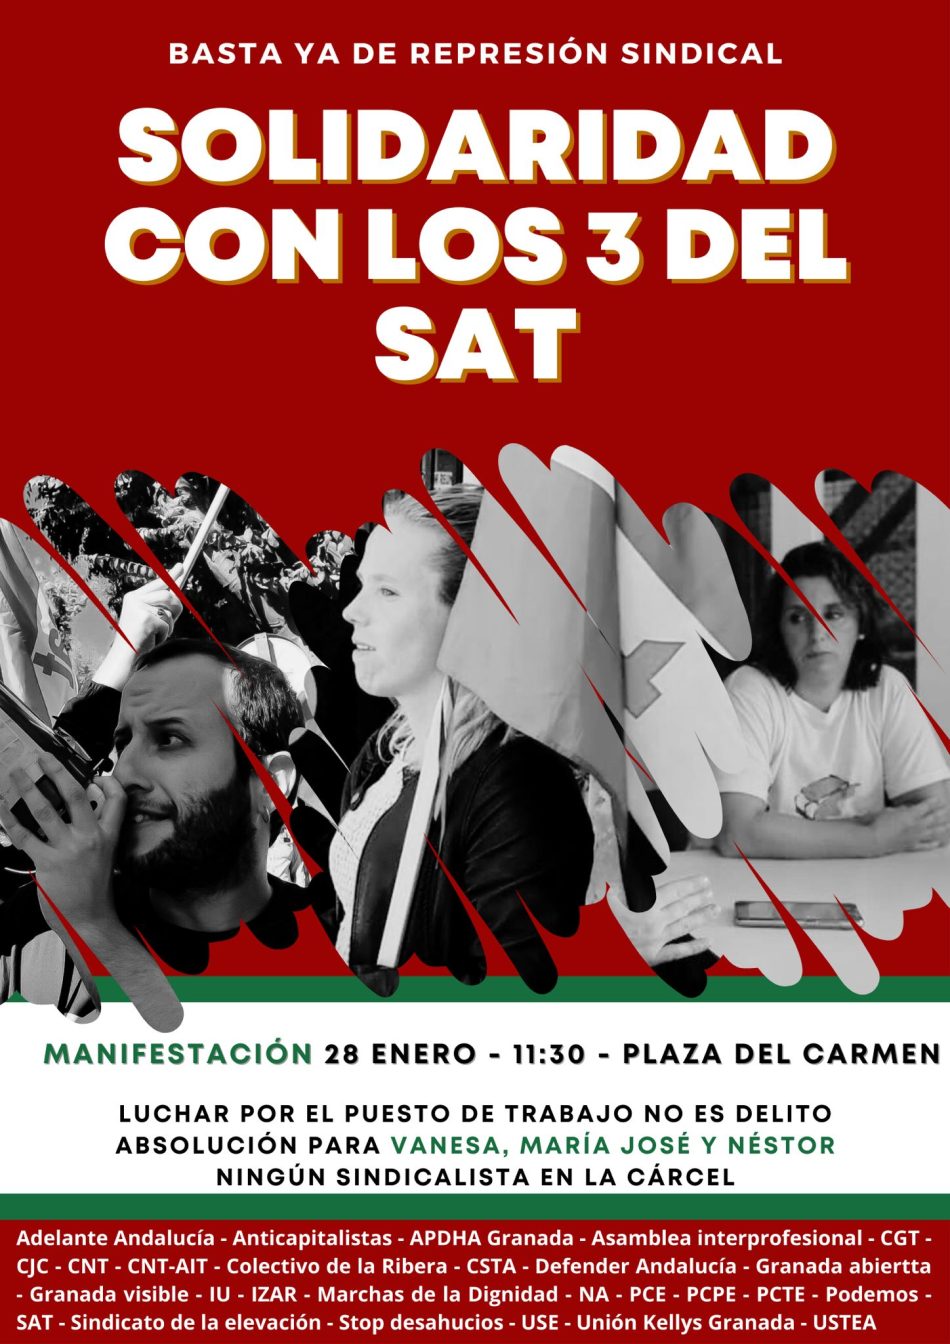 Organizaciones sindicales y sociales convocan una manifestación en Granada para vindicar la absolución de las/os 3 sindicalistas del SAT